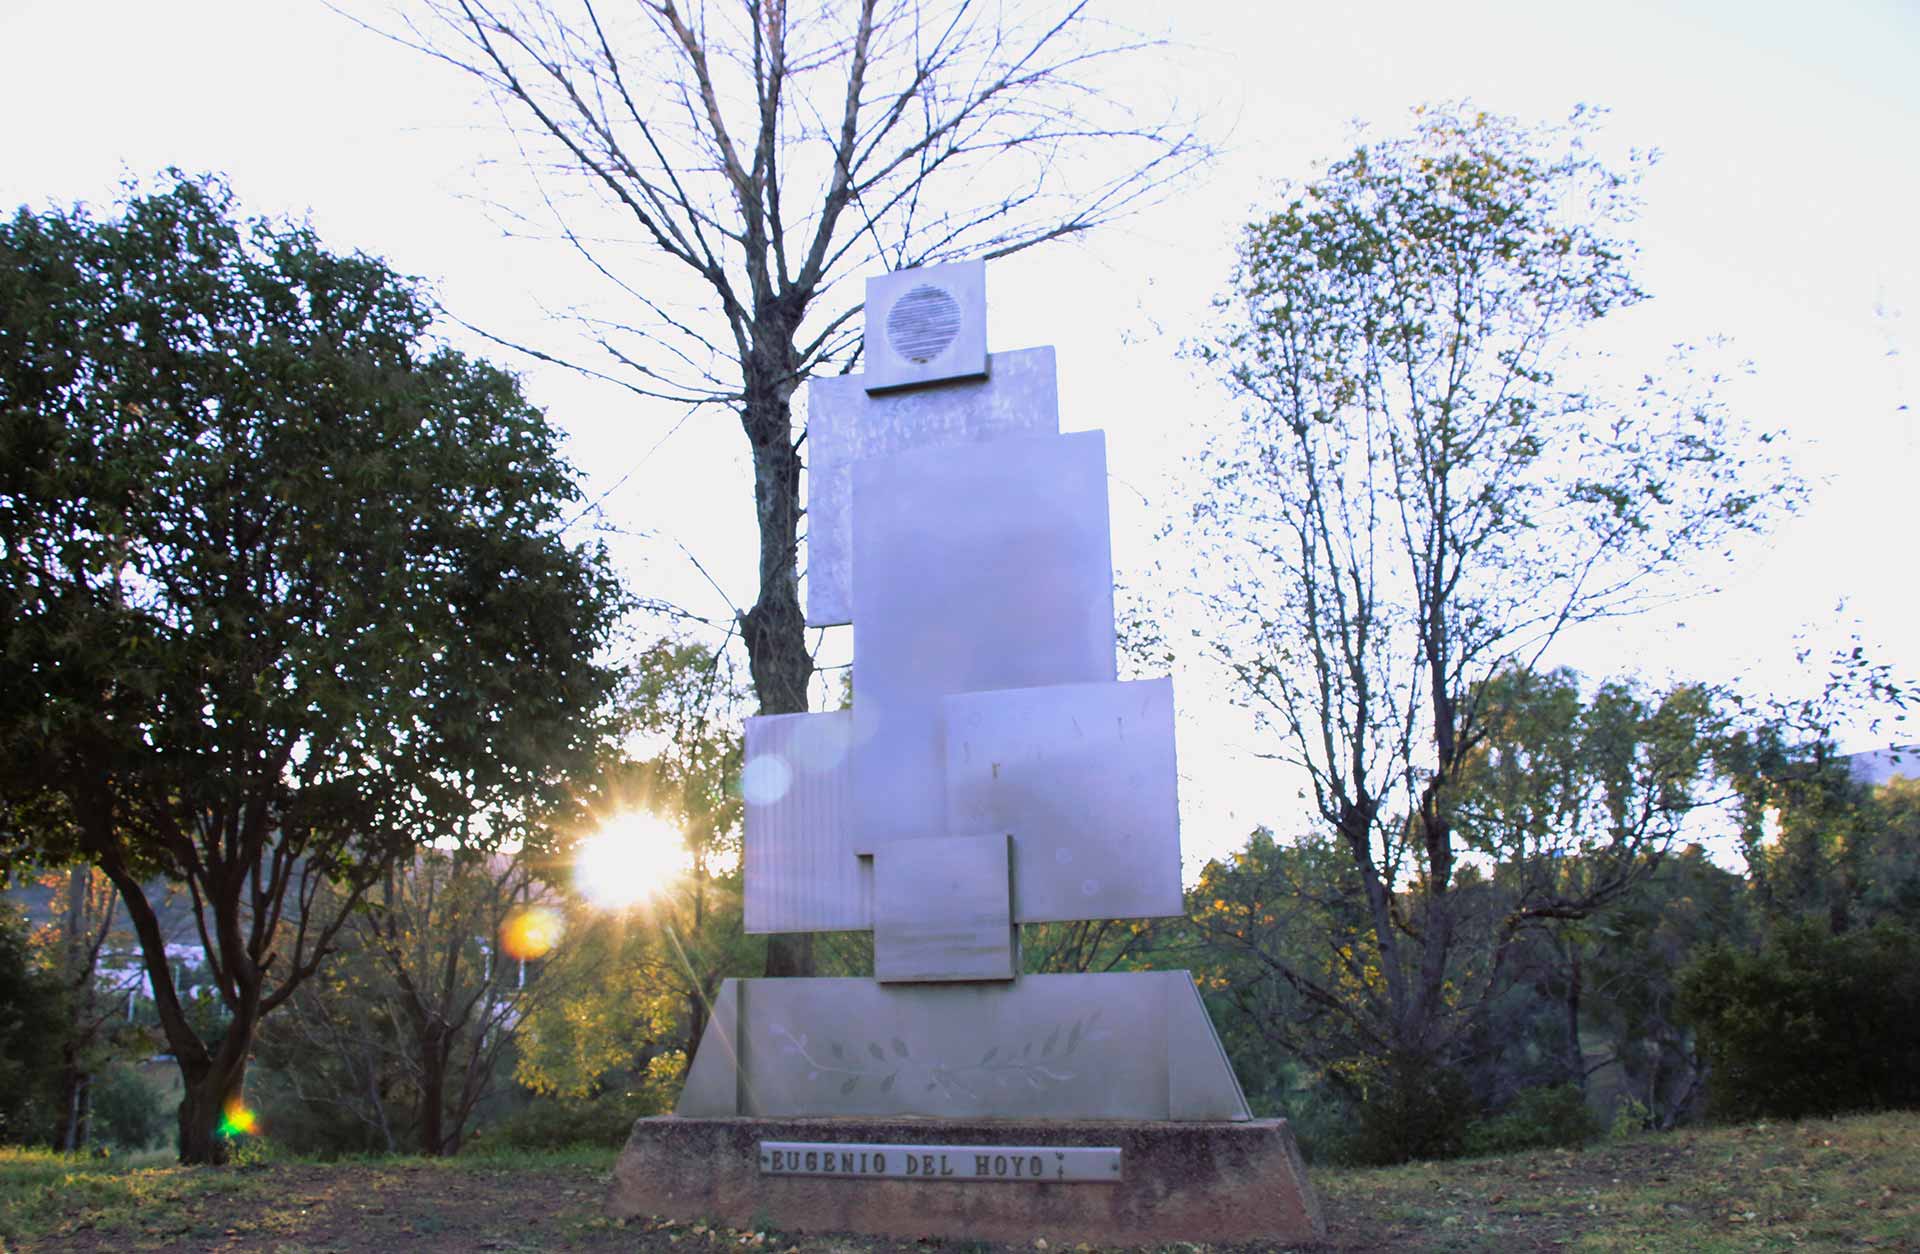 Se muestra el monumento, en una foto donde se observa también el brillo del sol